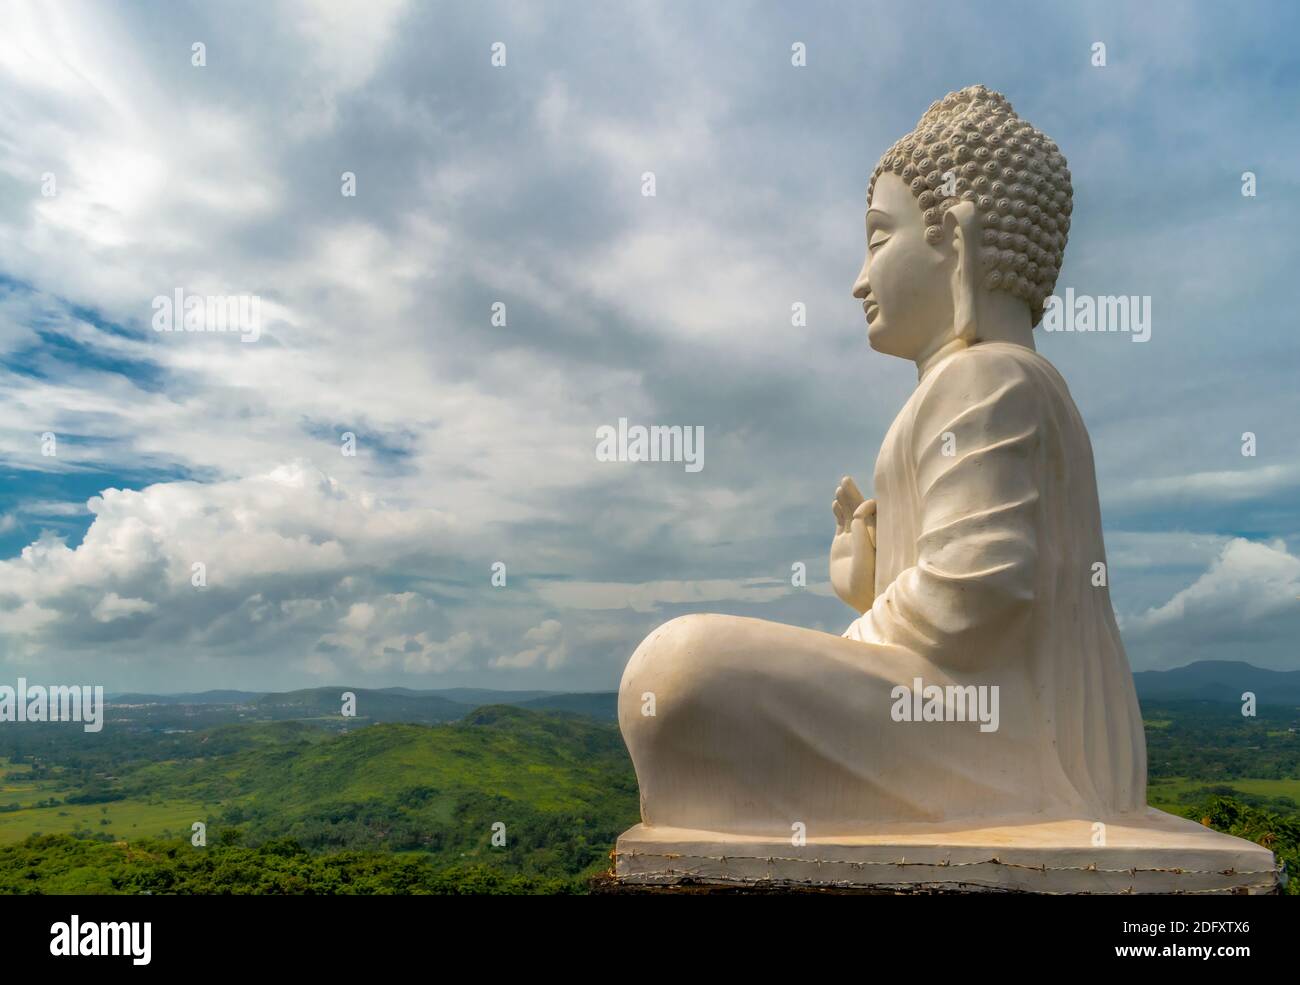 Photo étonnante de la statue de Bouddha de Seigneur en blanc, assis dans la posture de méditation tout en donnant des sermons au sommet de la colline d'où toute la vallée a pu être vue. Banque D'Images